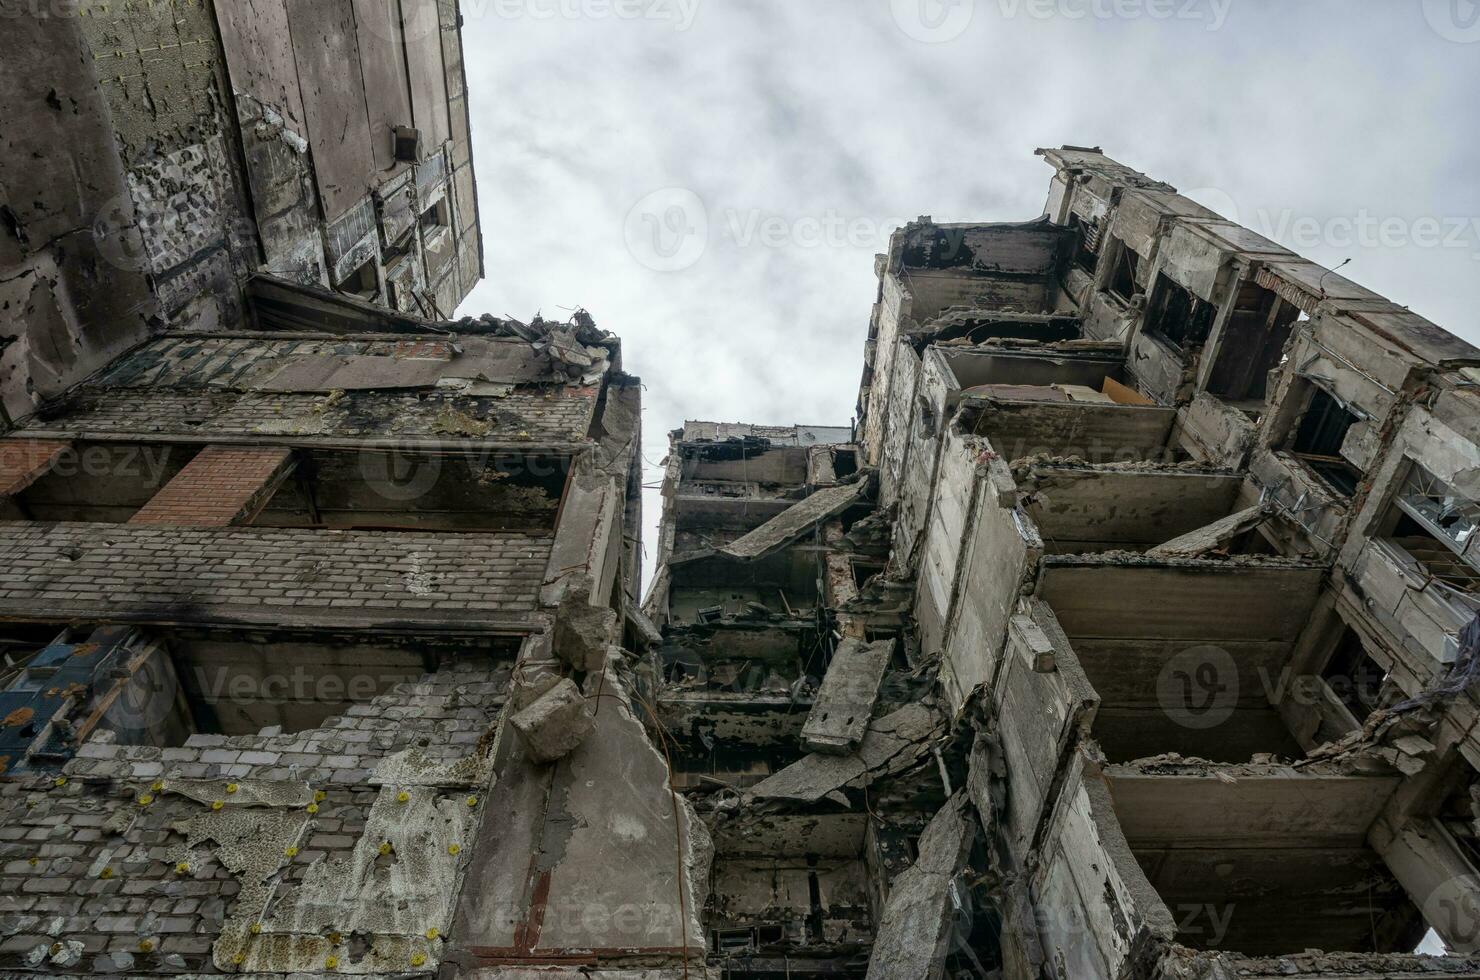 vernietigd en verbrand huizen in de stad gedurende de oorlog in Oekraïne foto